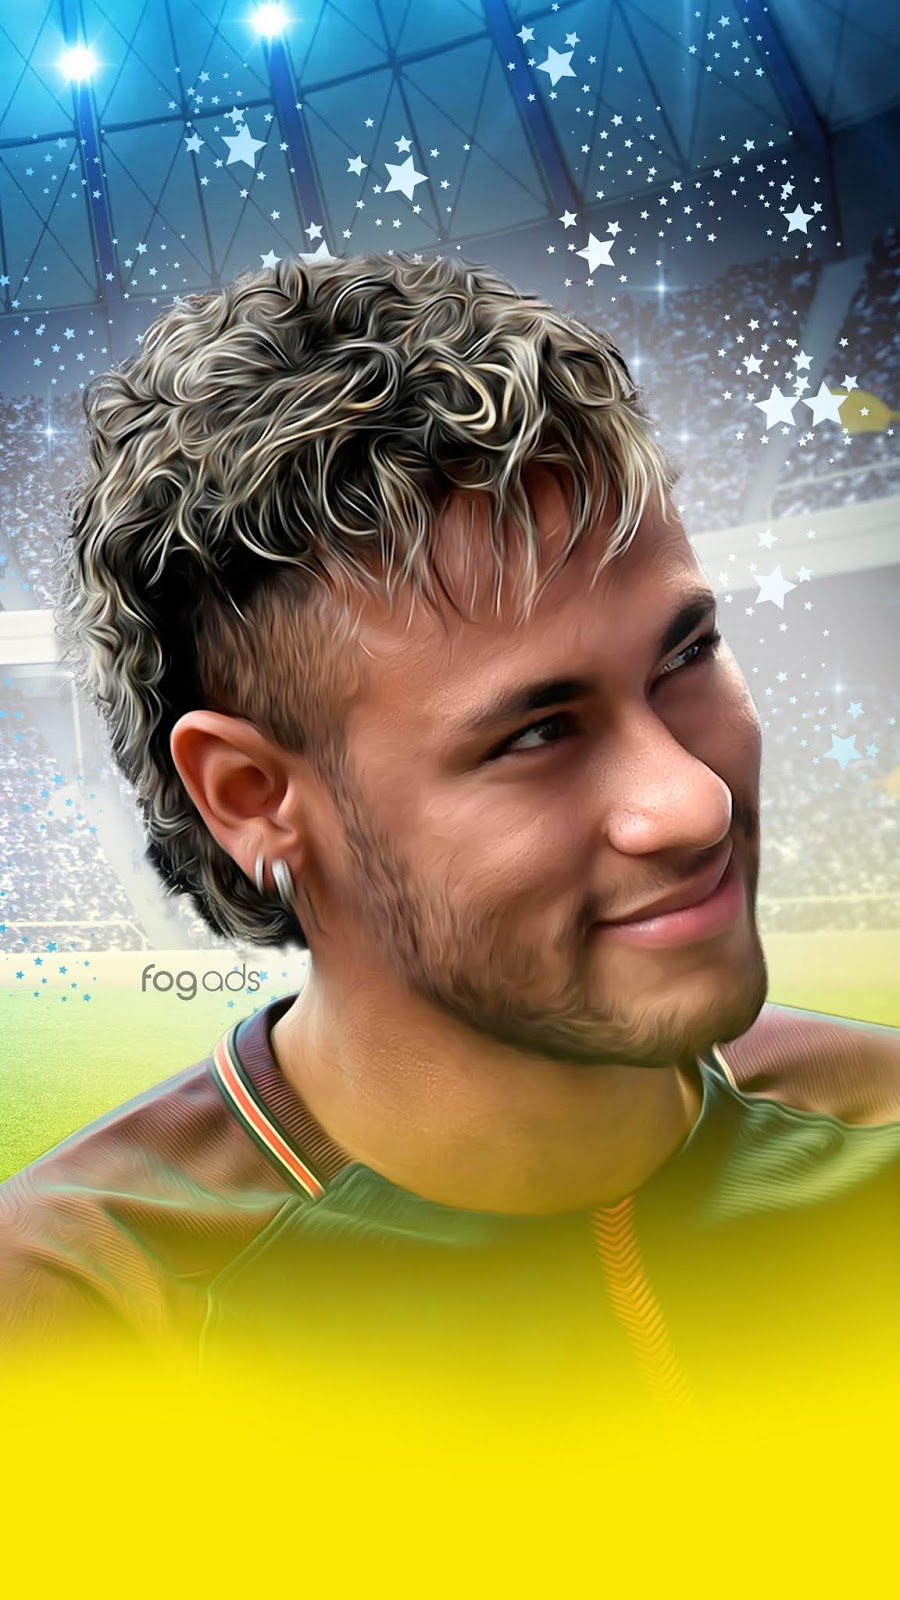 Neymar Mobile Wallpaper HD